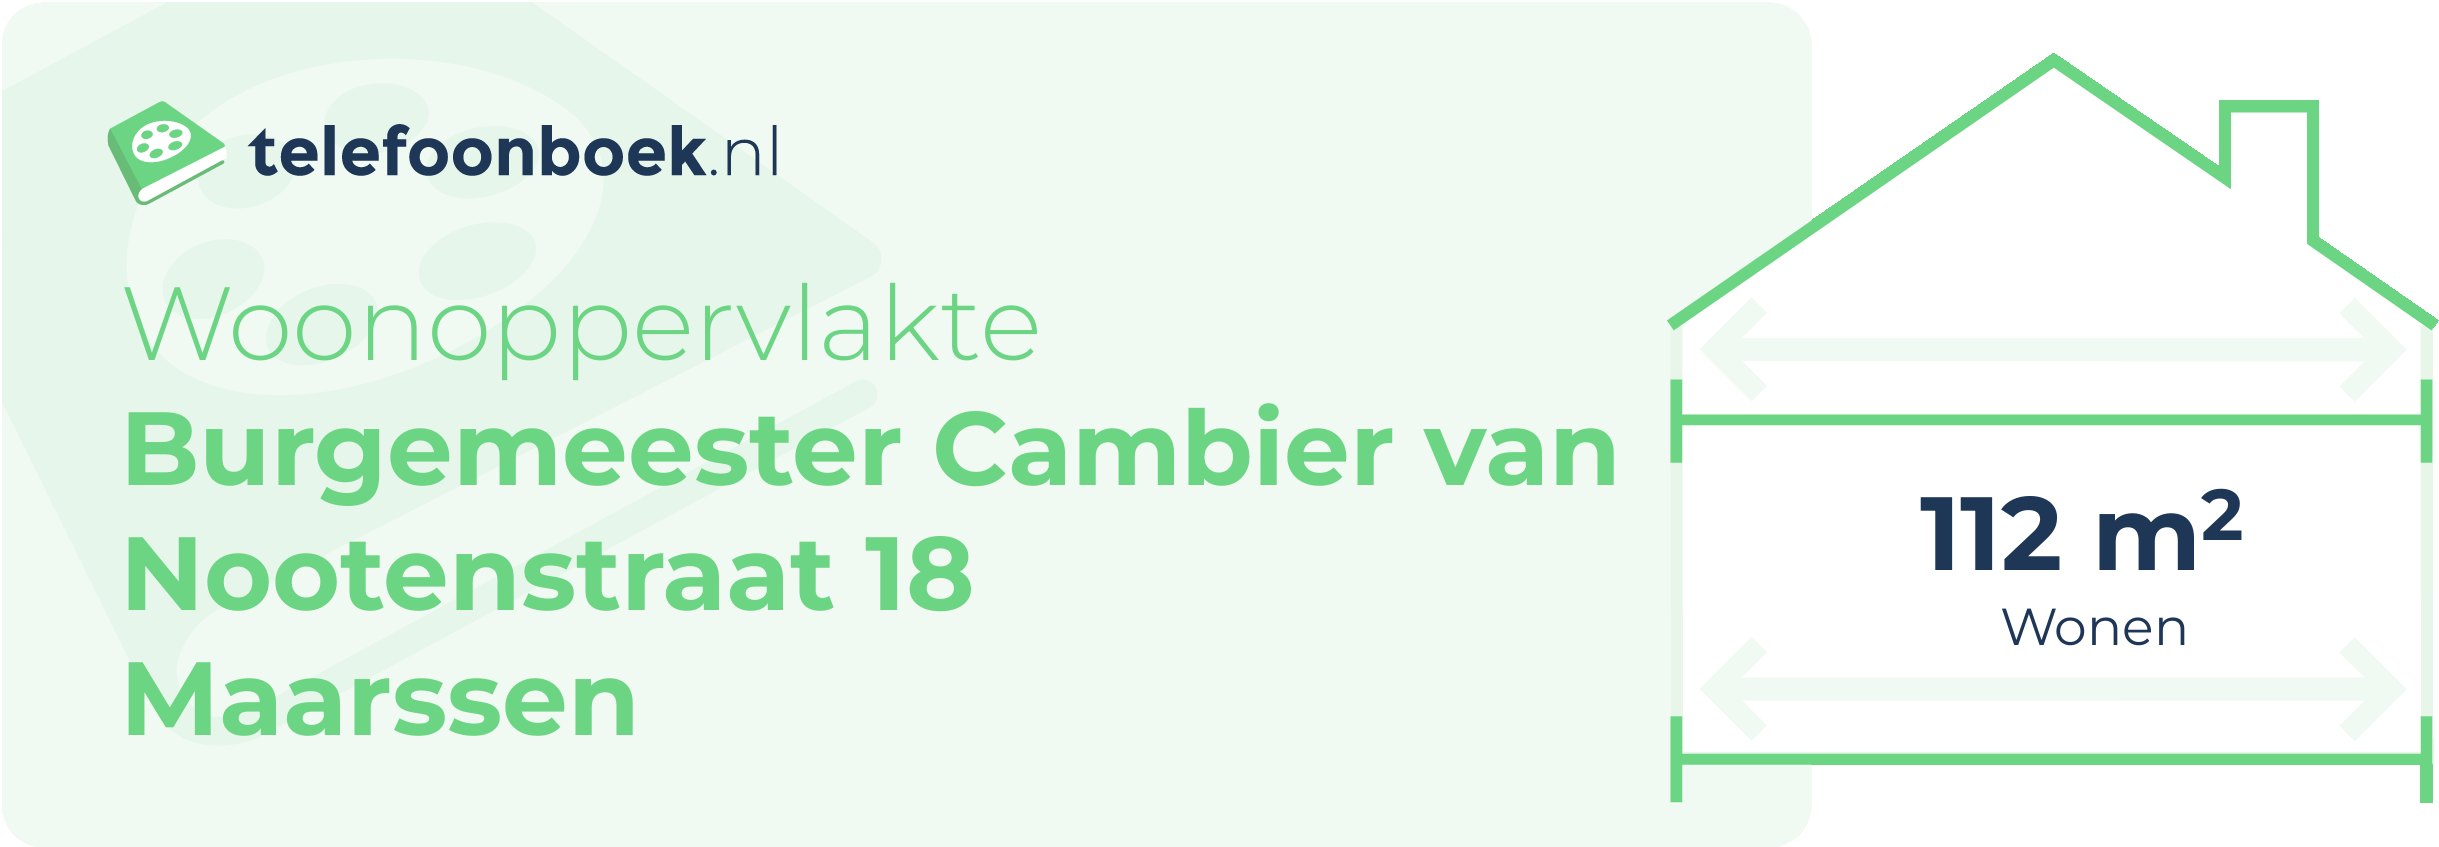 Woonoppervlakte Burgemeester Cambier Van Nootenstraat 18 Maarssen